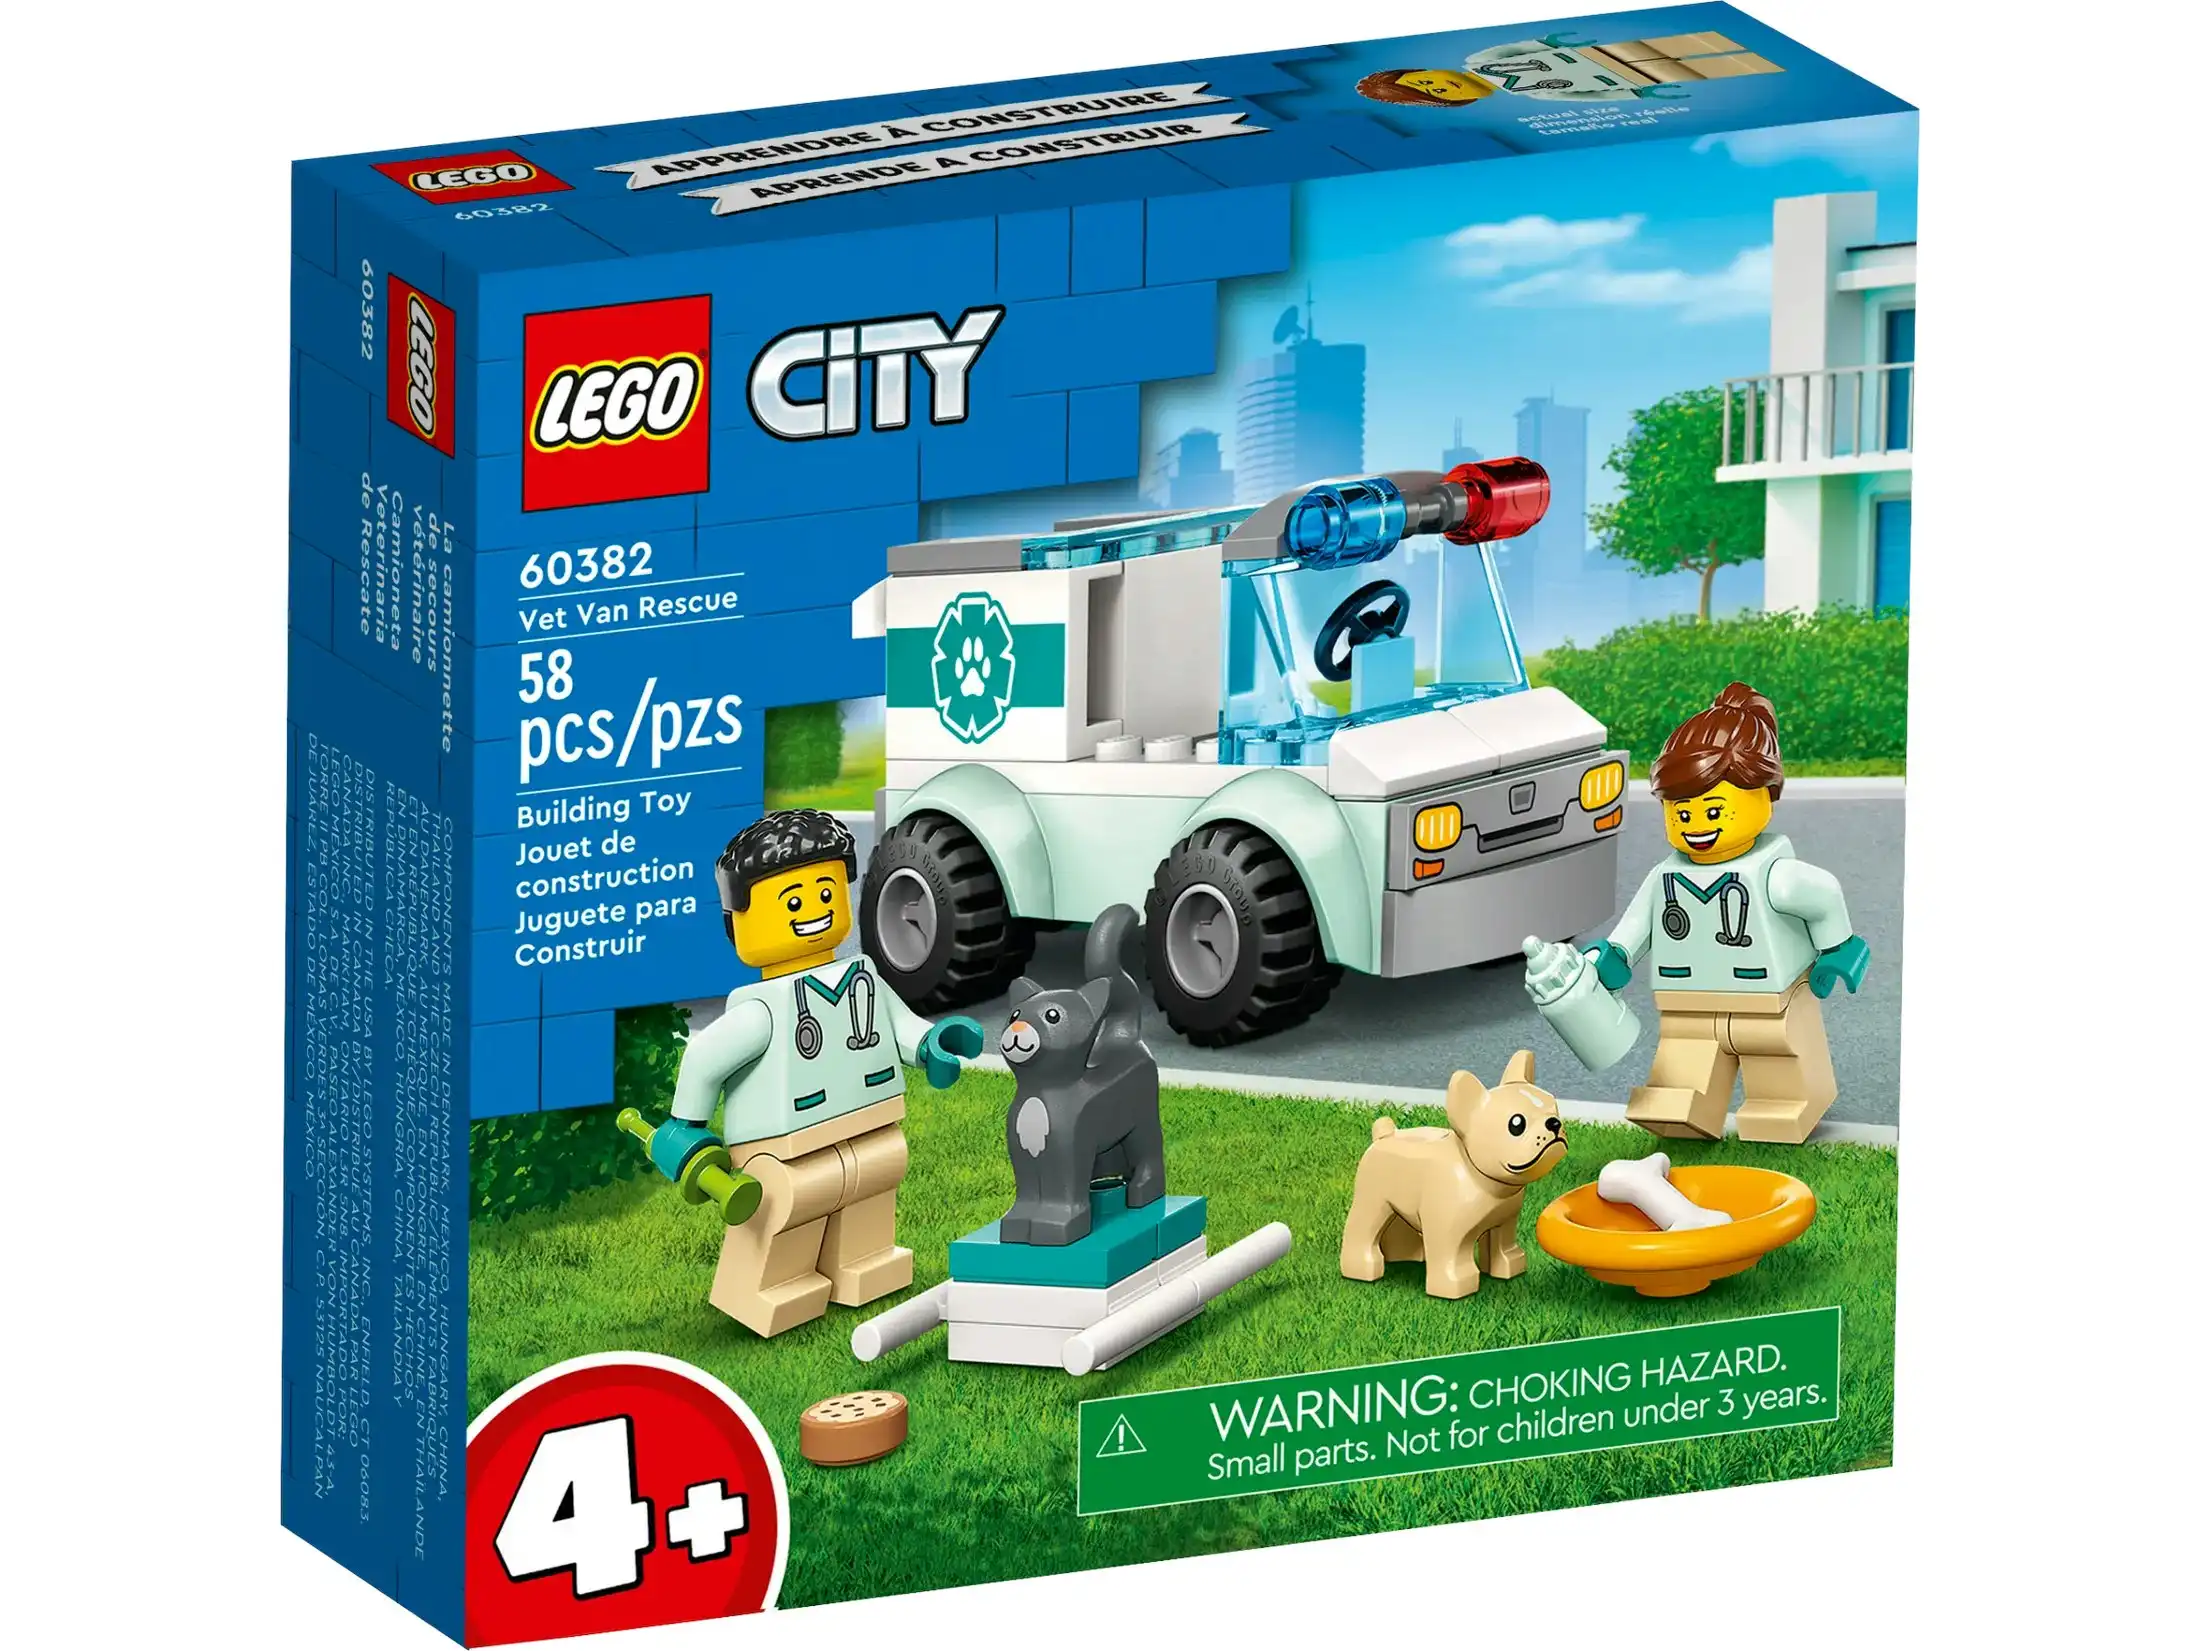 LEGO 60382 Vet Van Rescue - City 4+